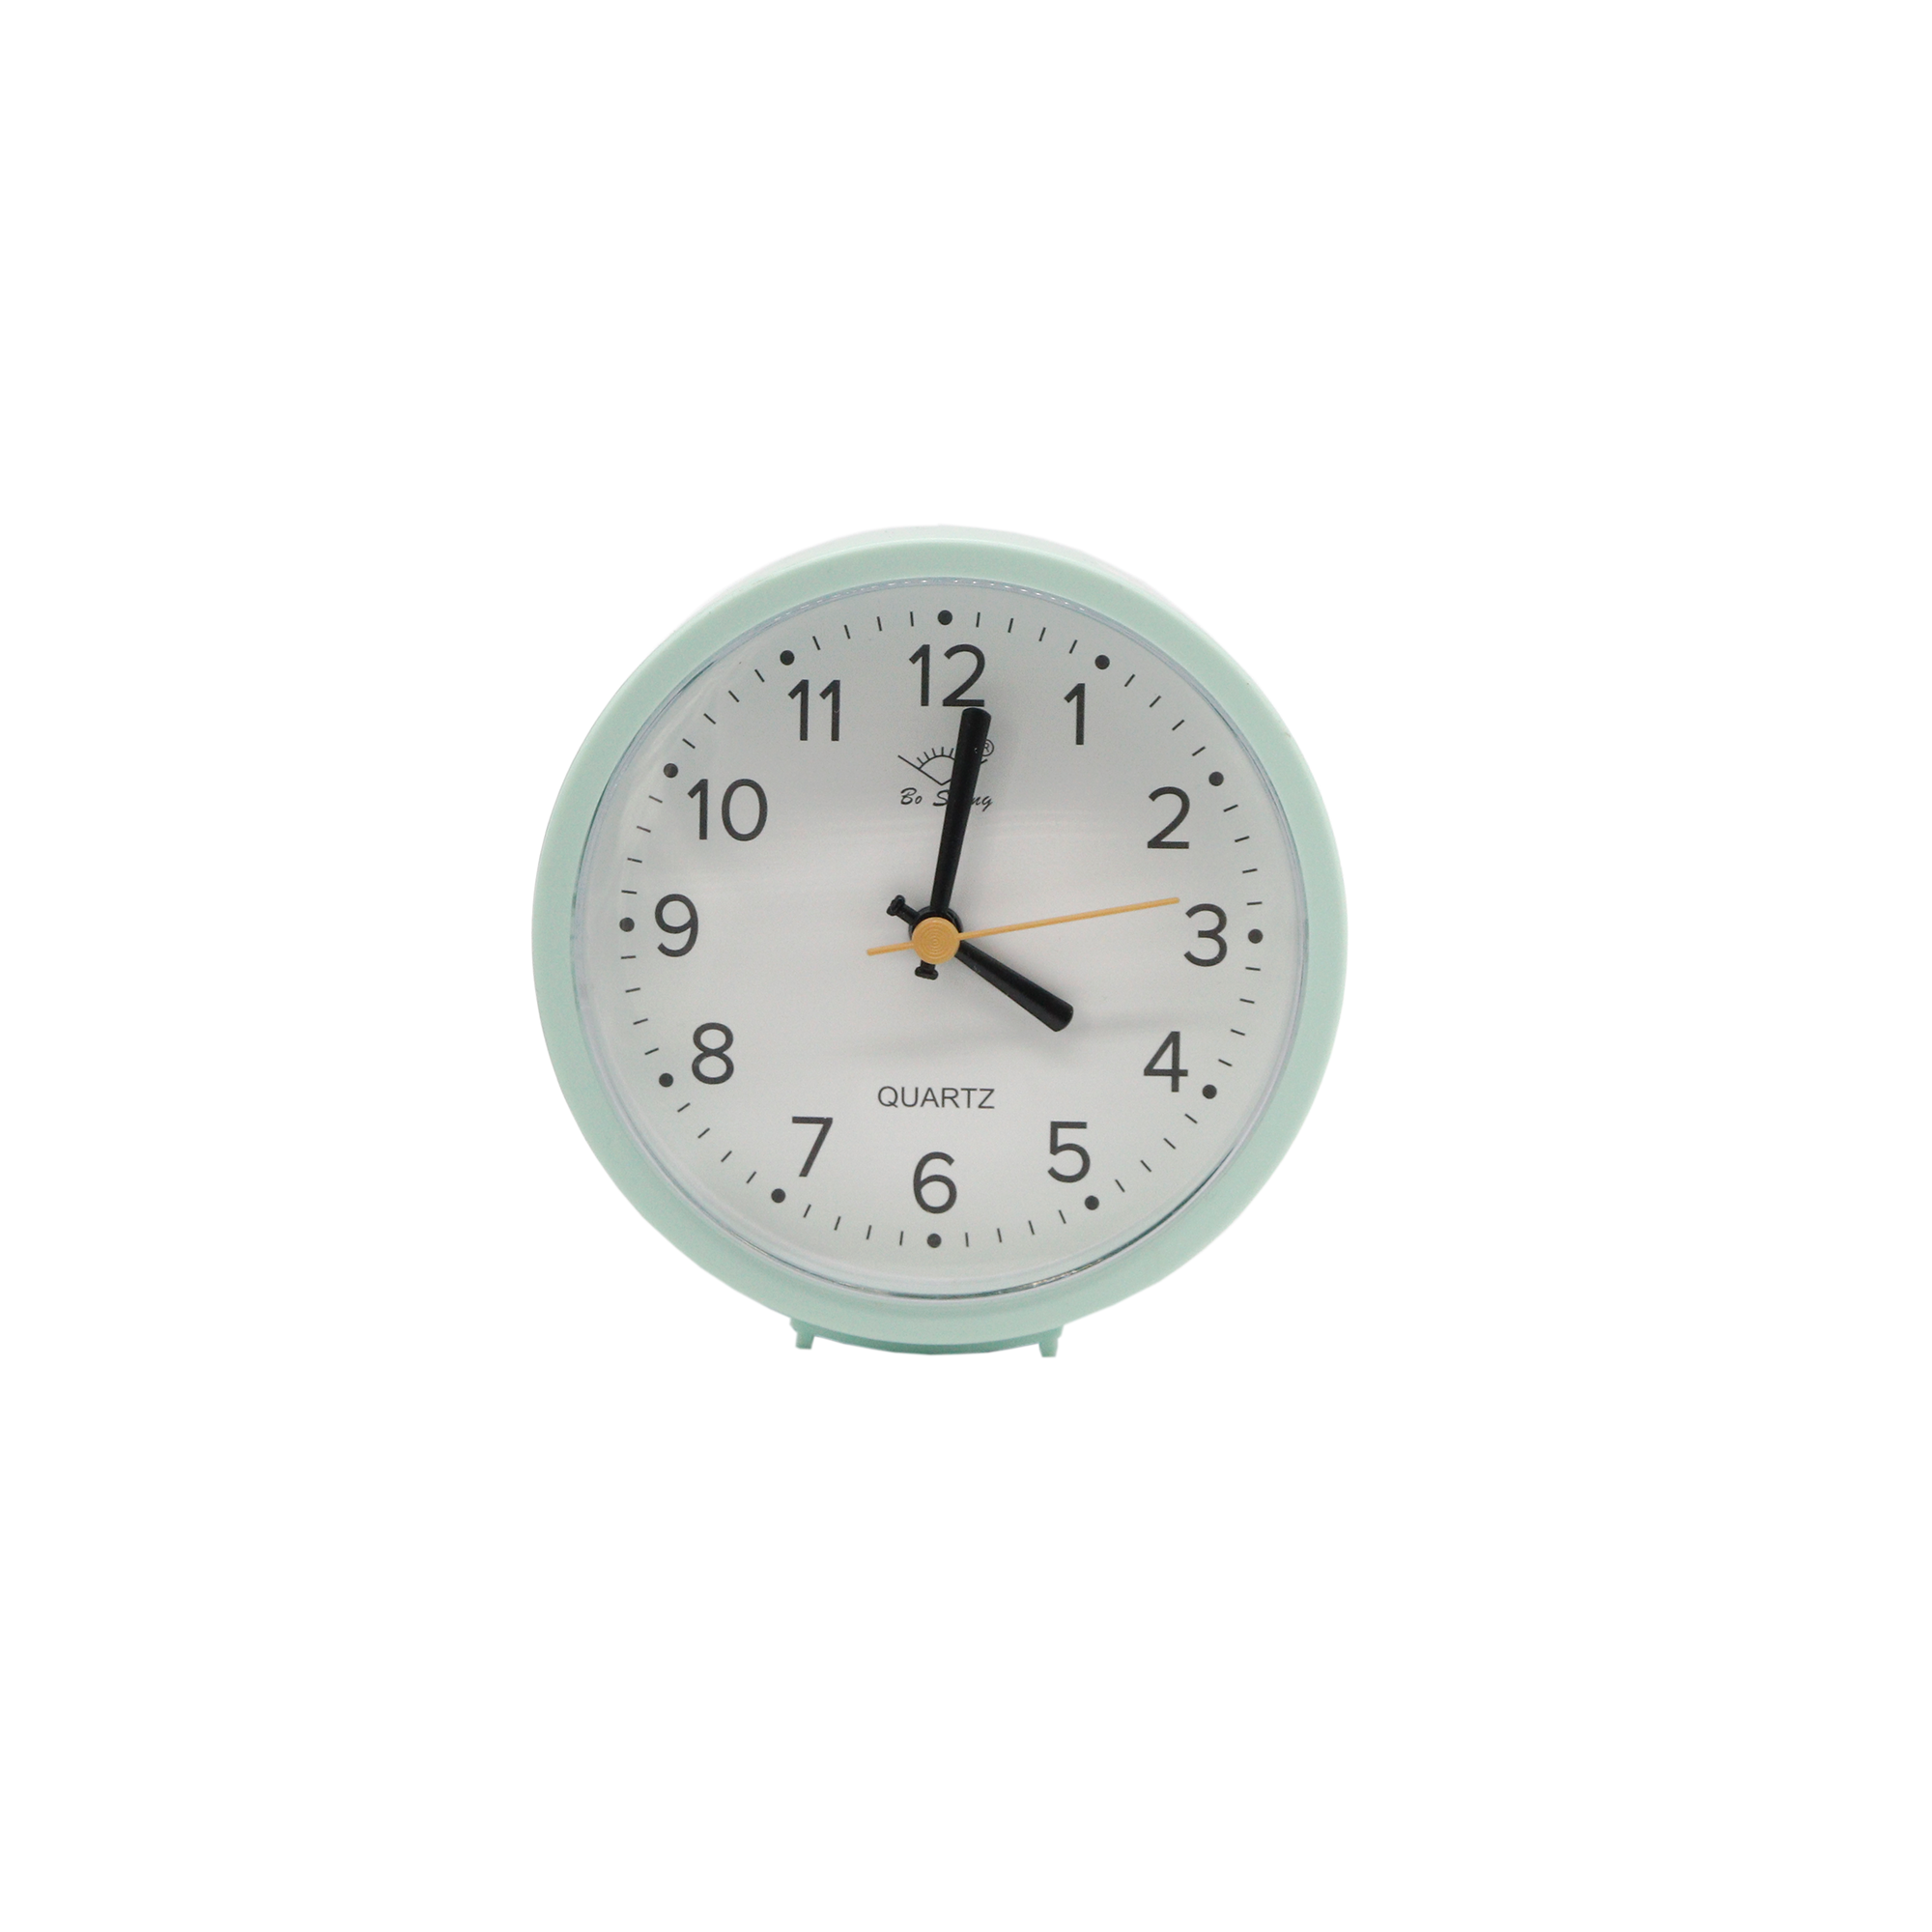 Table clock alarm clock GH209 